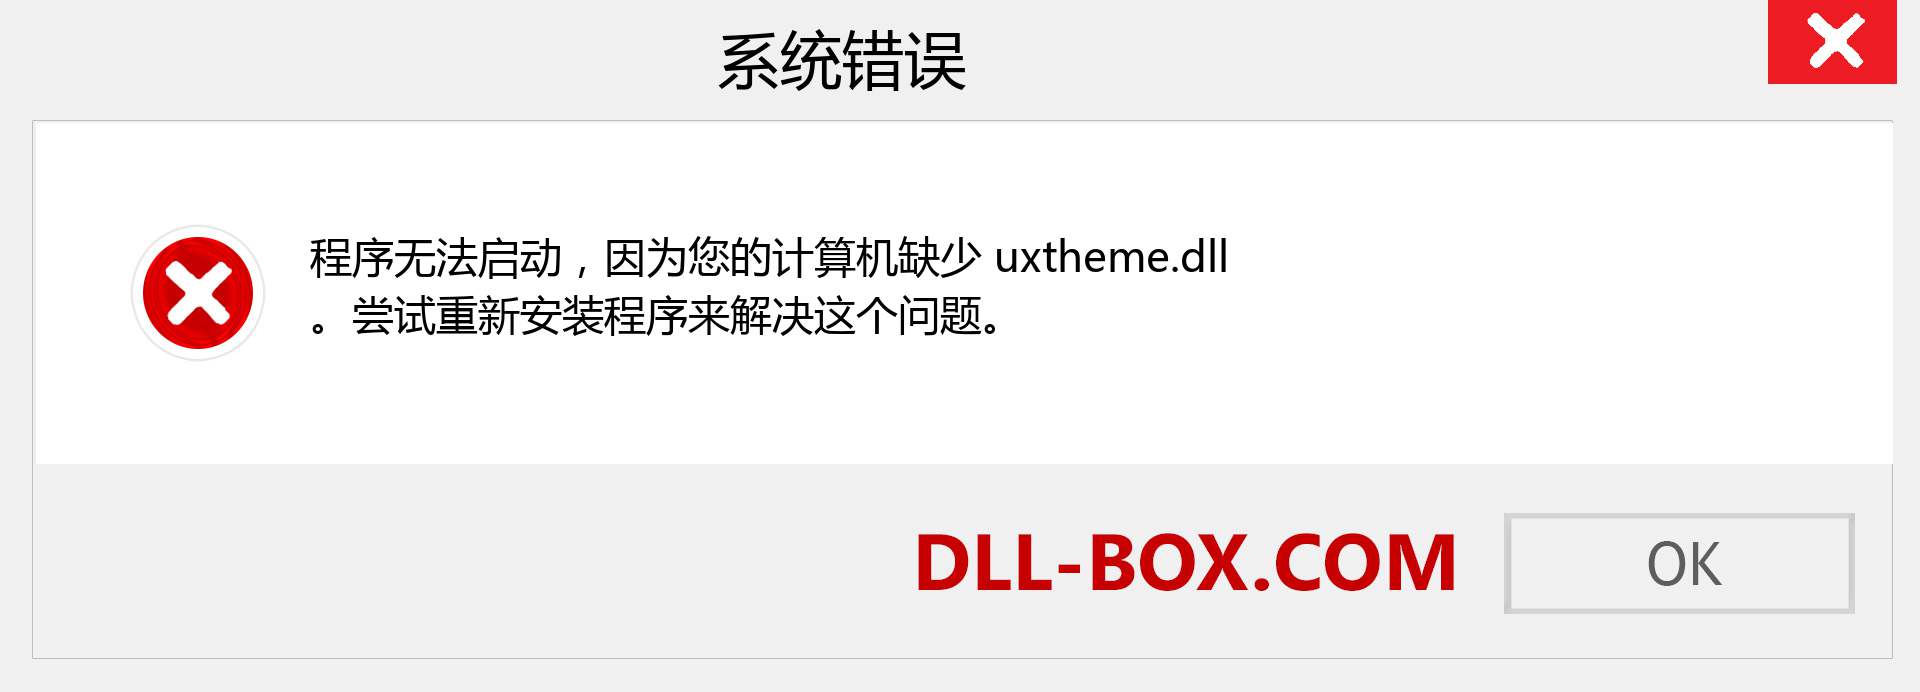 uxtheme.dll 文件丢失？。 适用于 Windows 7、8、10 的下载 - 修复 Windows、照片、图像上的 uxtheme dll 丢失错误